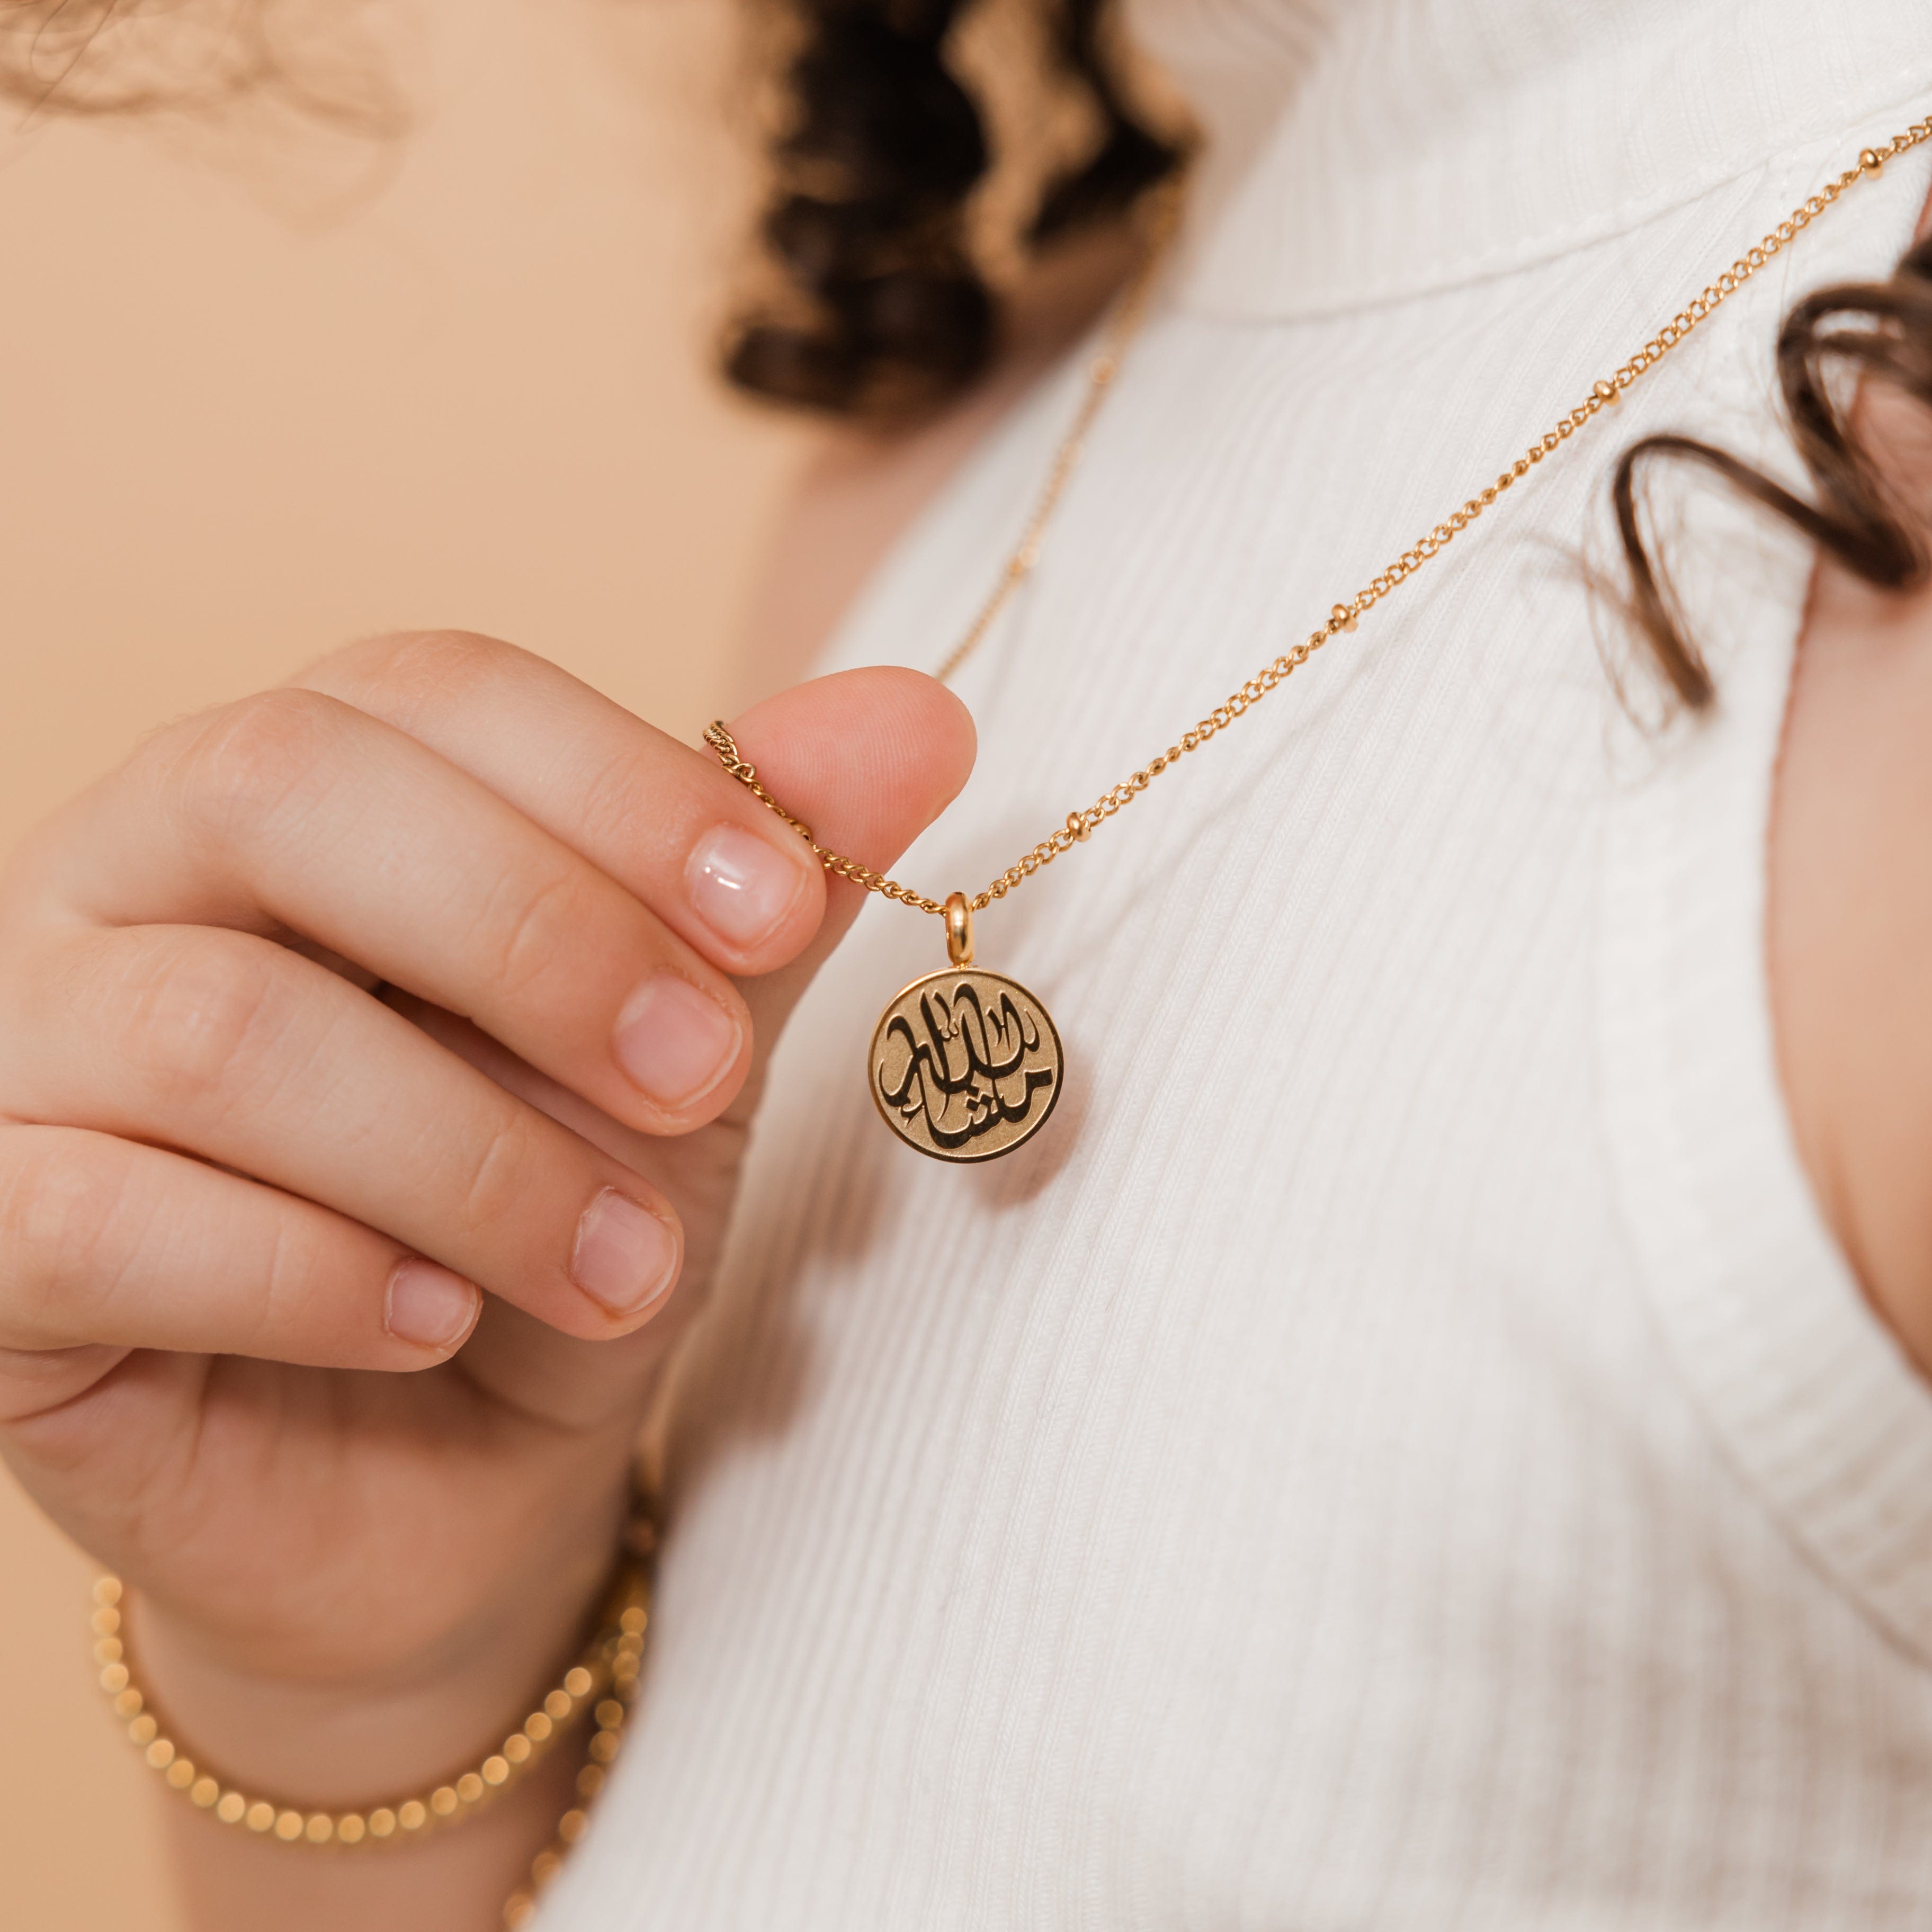 MashaAllah Token Necklace | Girls - Nominal